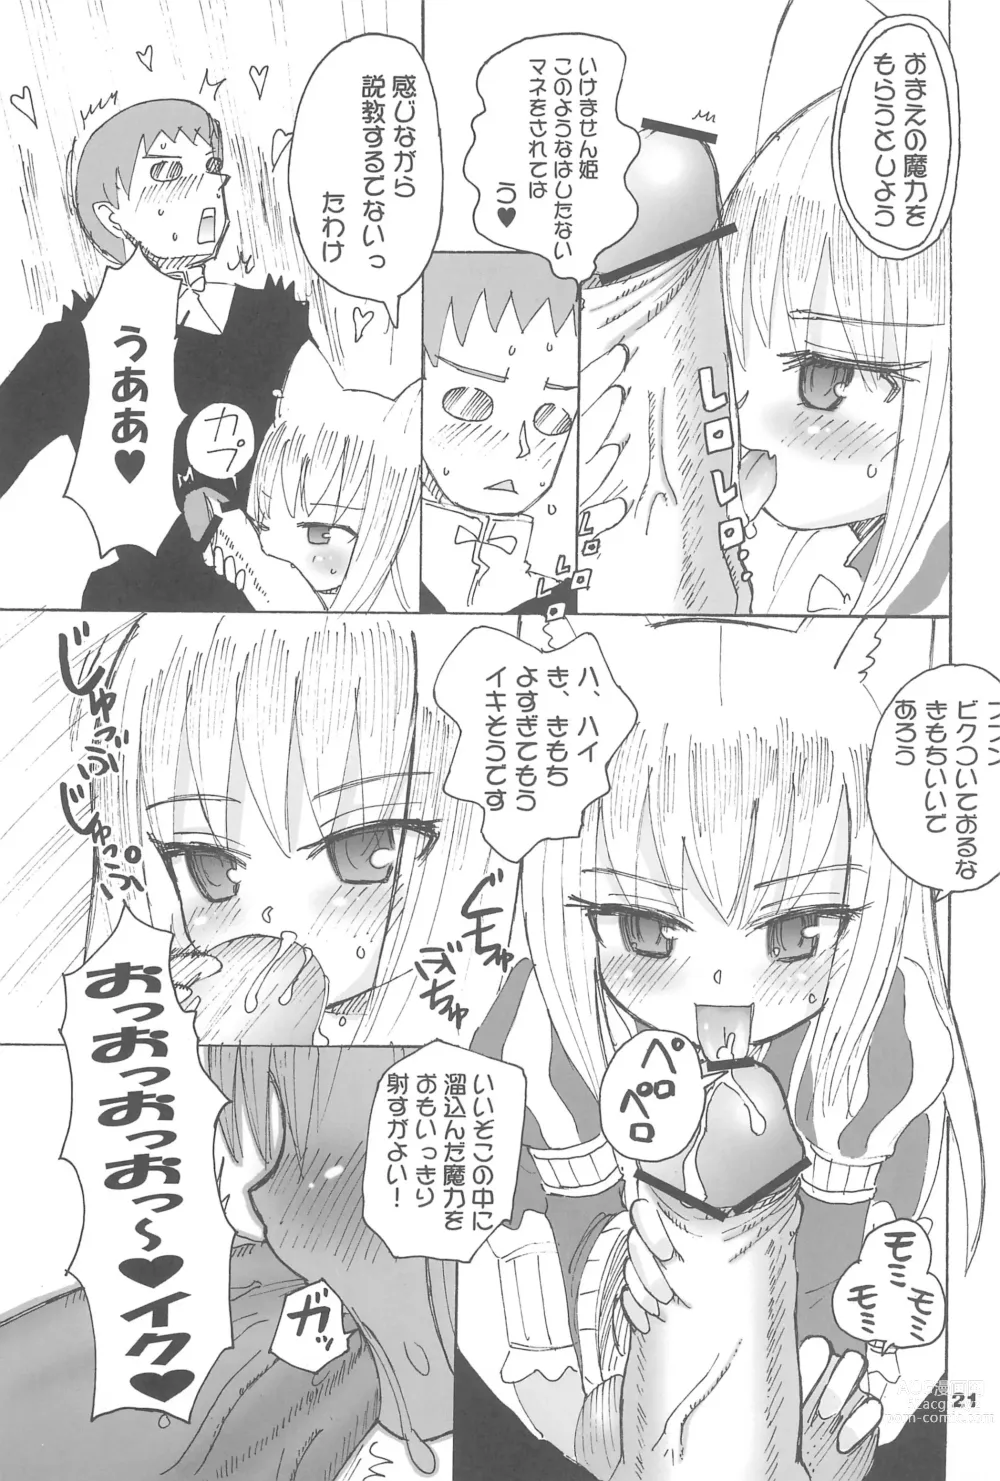 Page 21 of doujinshi Tsuyome Neko